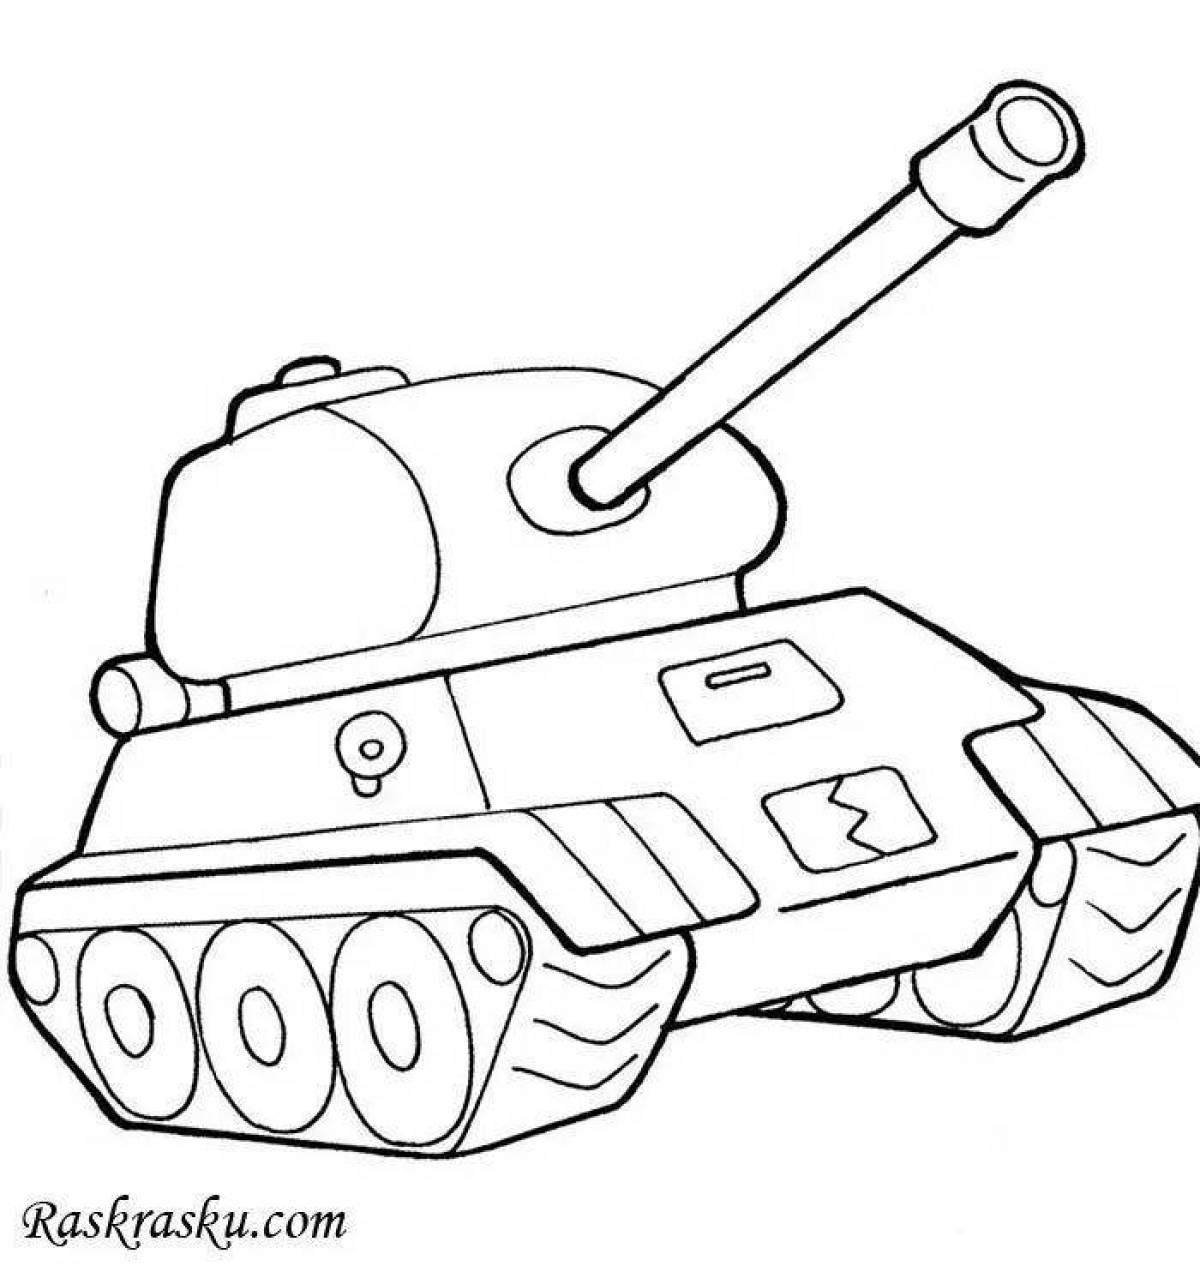 Веселая раскраска танков для детей